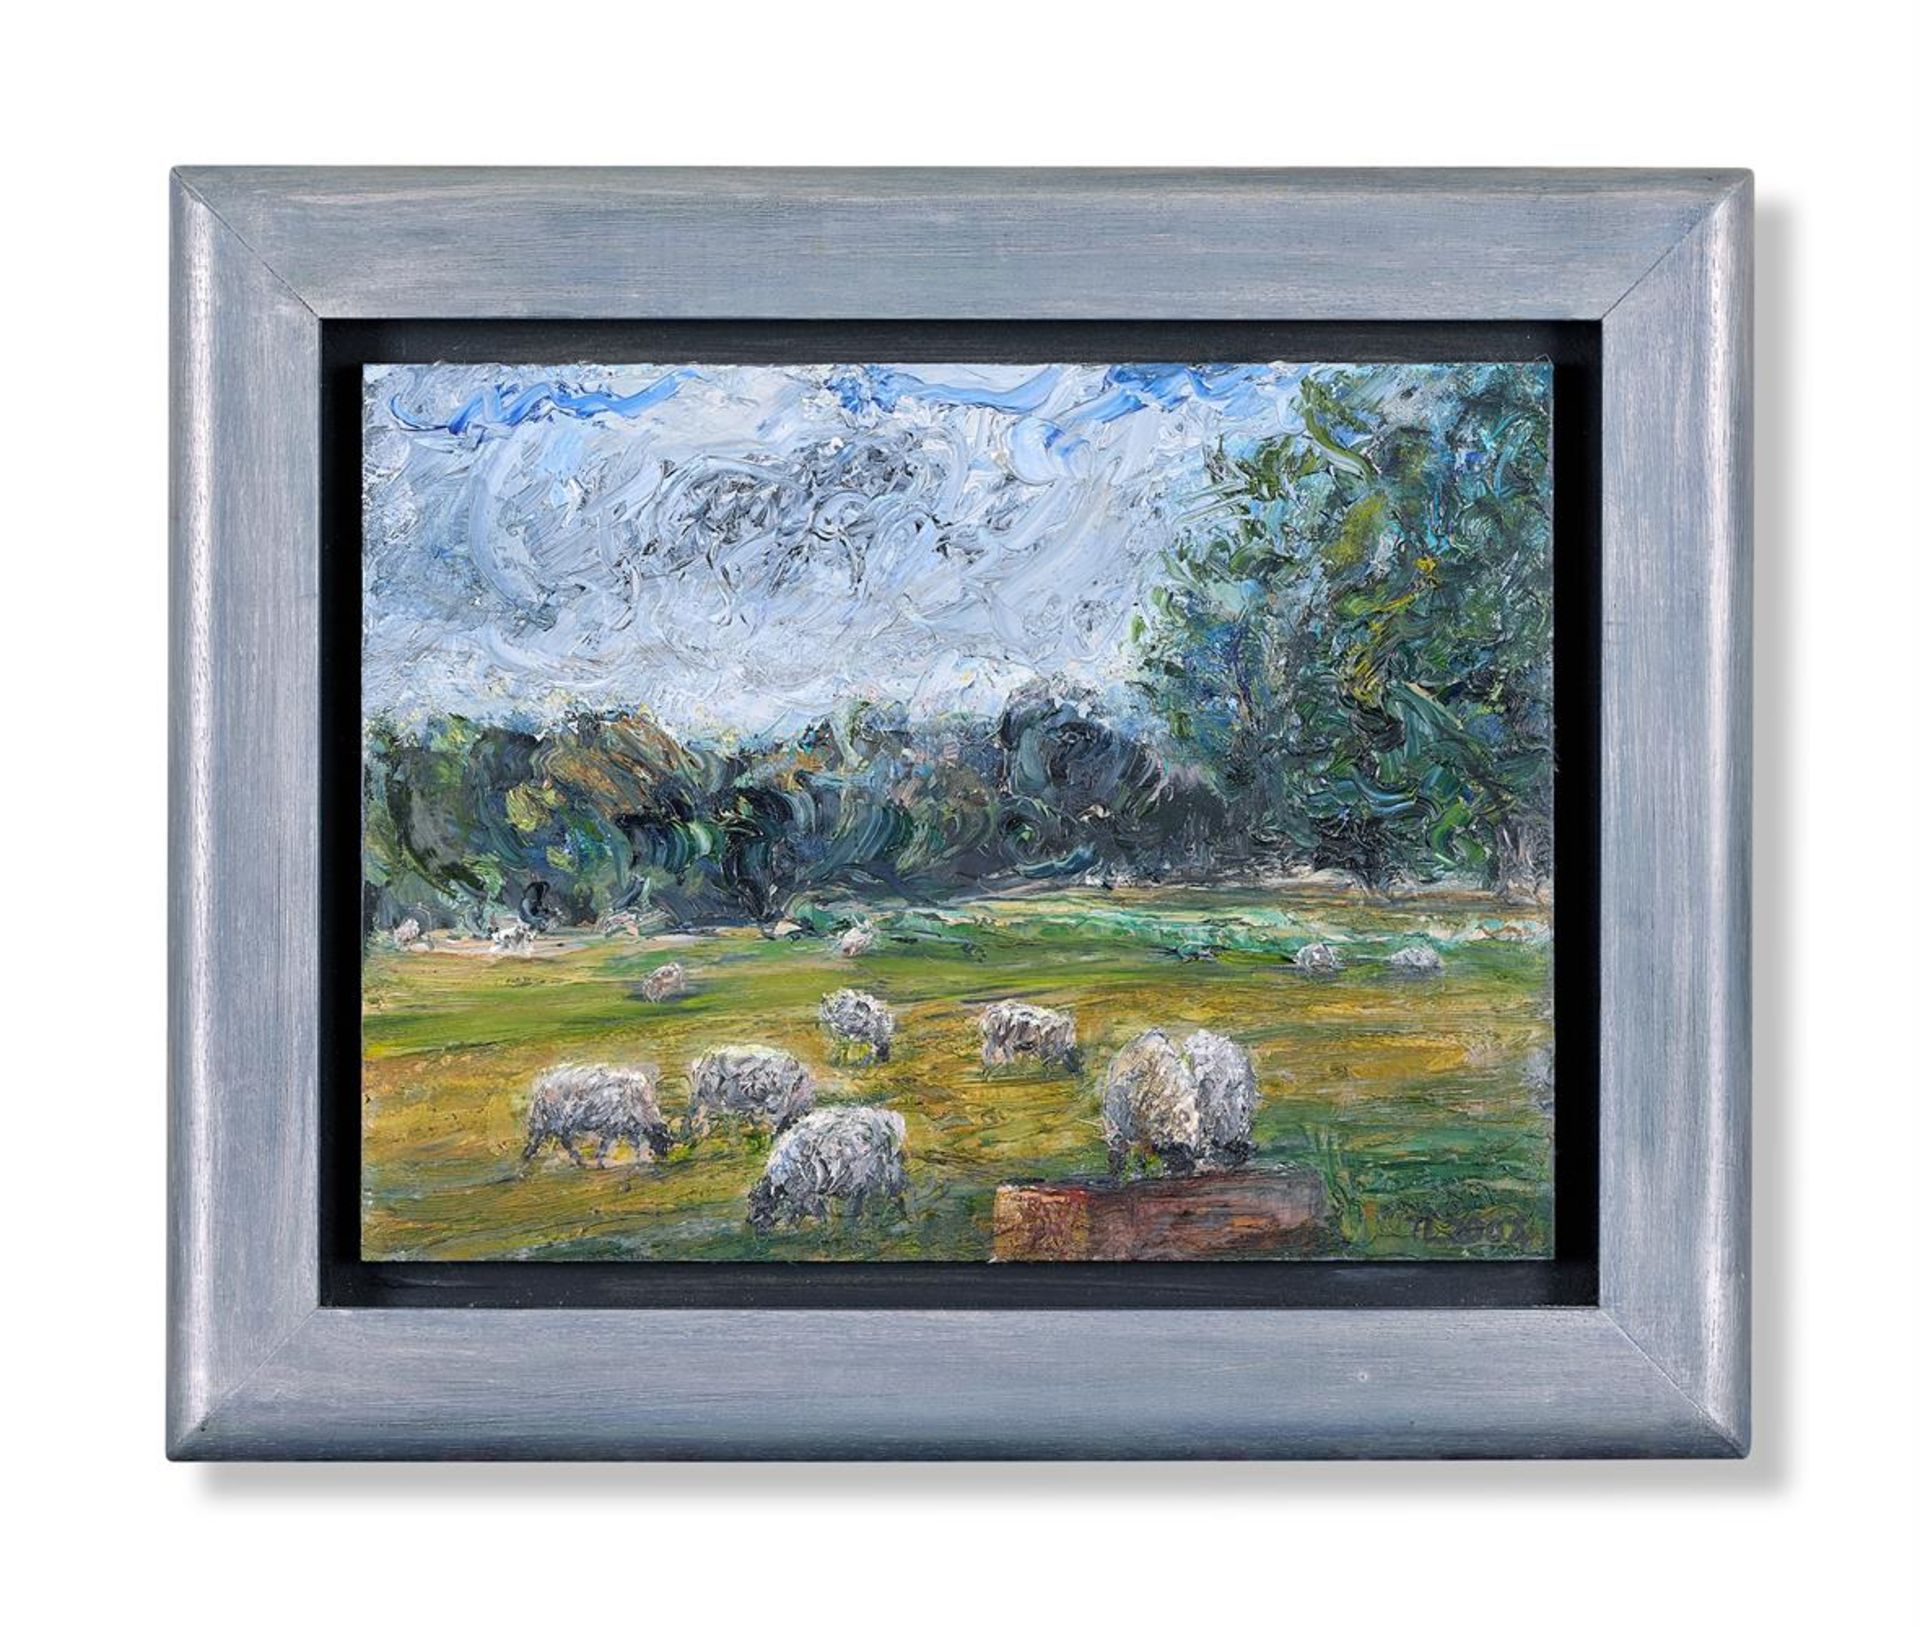 λ TORY LAWRENCE (BRITISH B. 1940), SHEEP IN A WATERMEADOW